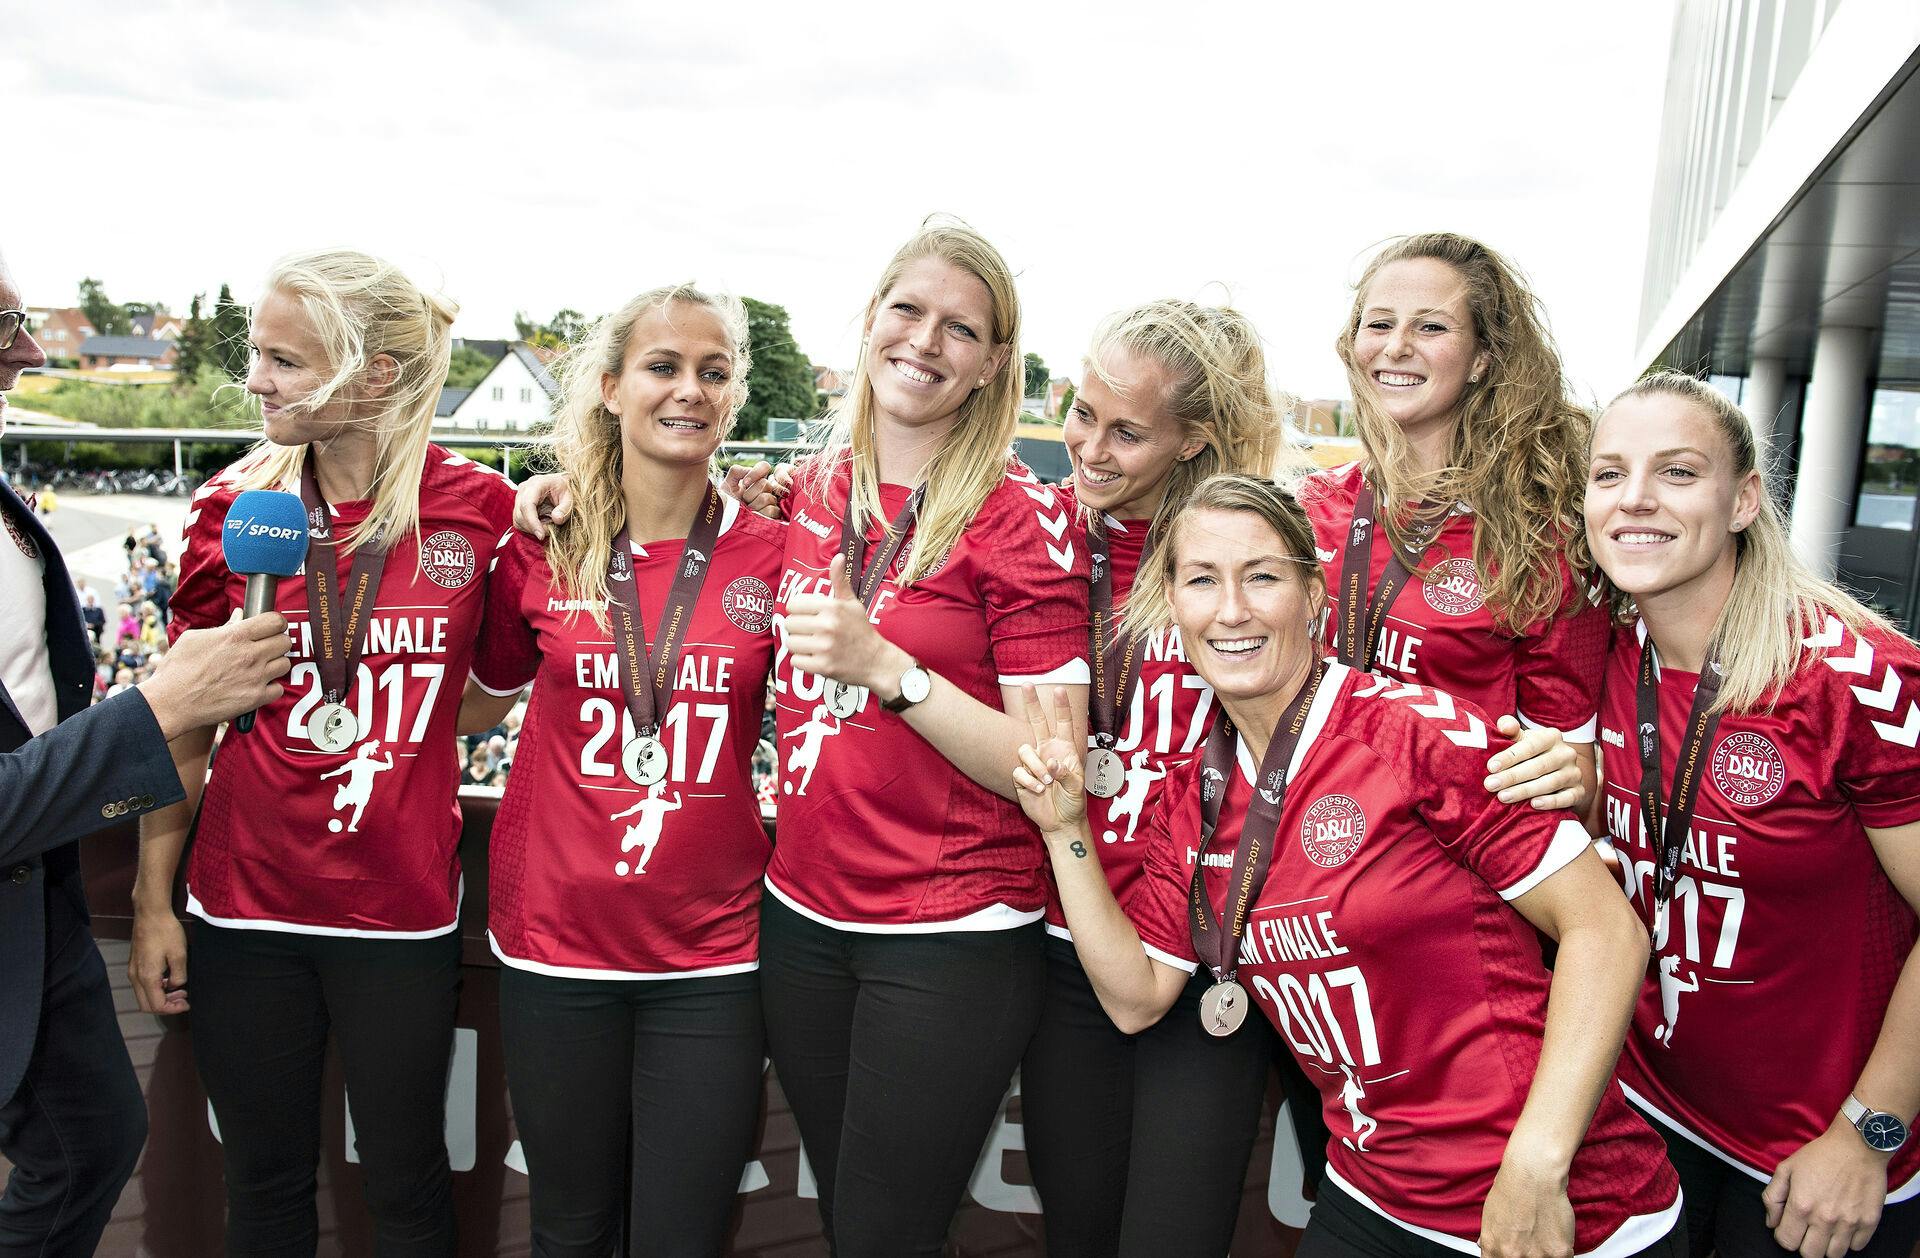 Det danske kvindelandshold vandt EM-sølv ved slutrunden i Holland i 2017. En oplevelse som Theresa Eslund kalder for en af de største overhovedet i karrieren.